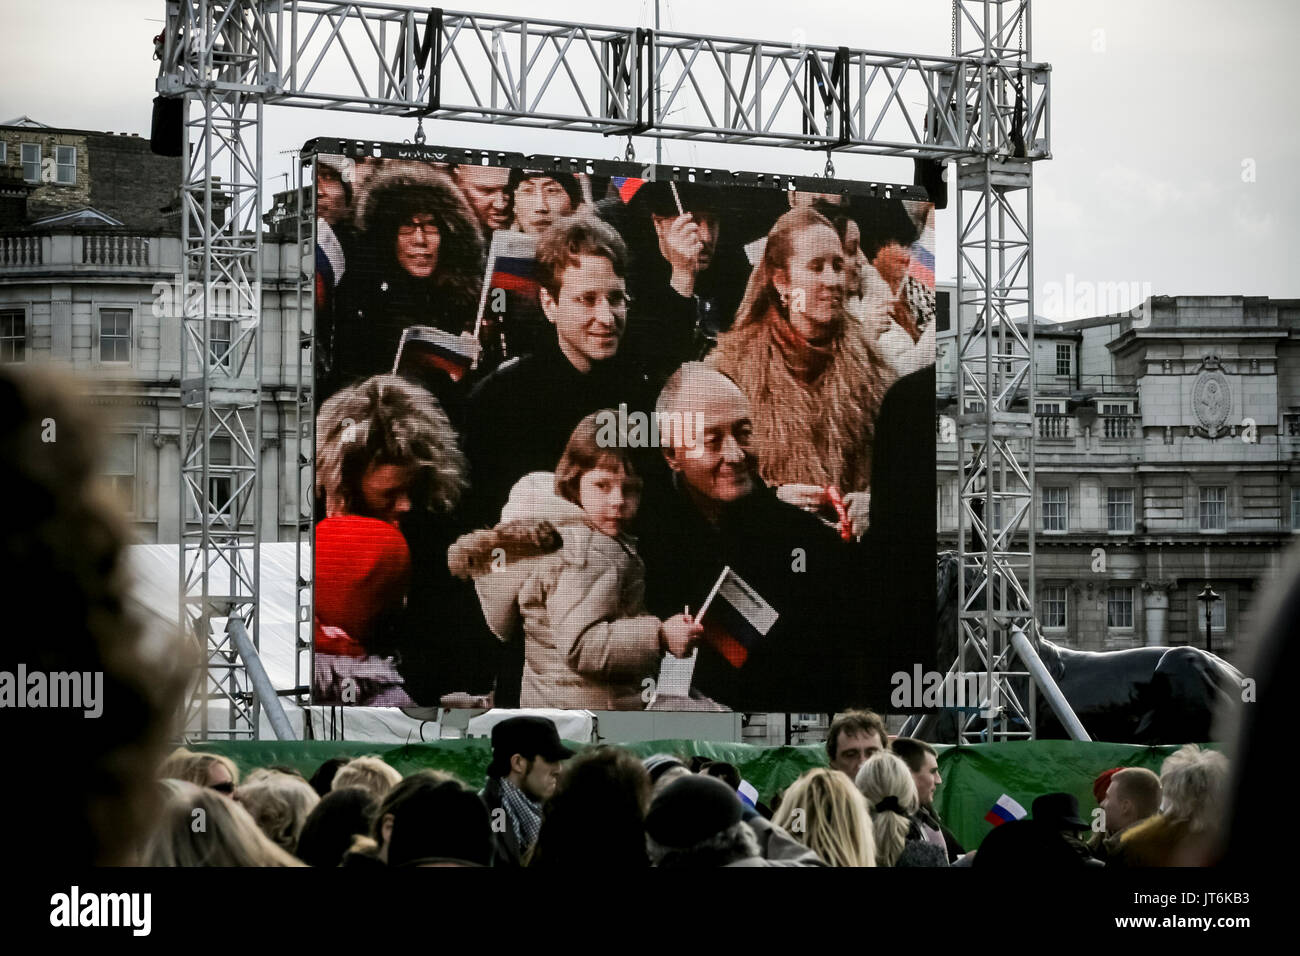 Ken Livingstone MP assiste à la 4e édition du Festival d'hiver russe à Trafalgar Square, Londres, Royaume-Uni. Banque D'Images